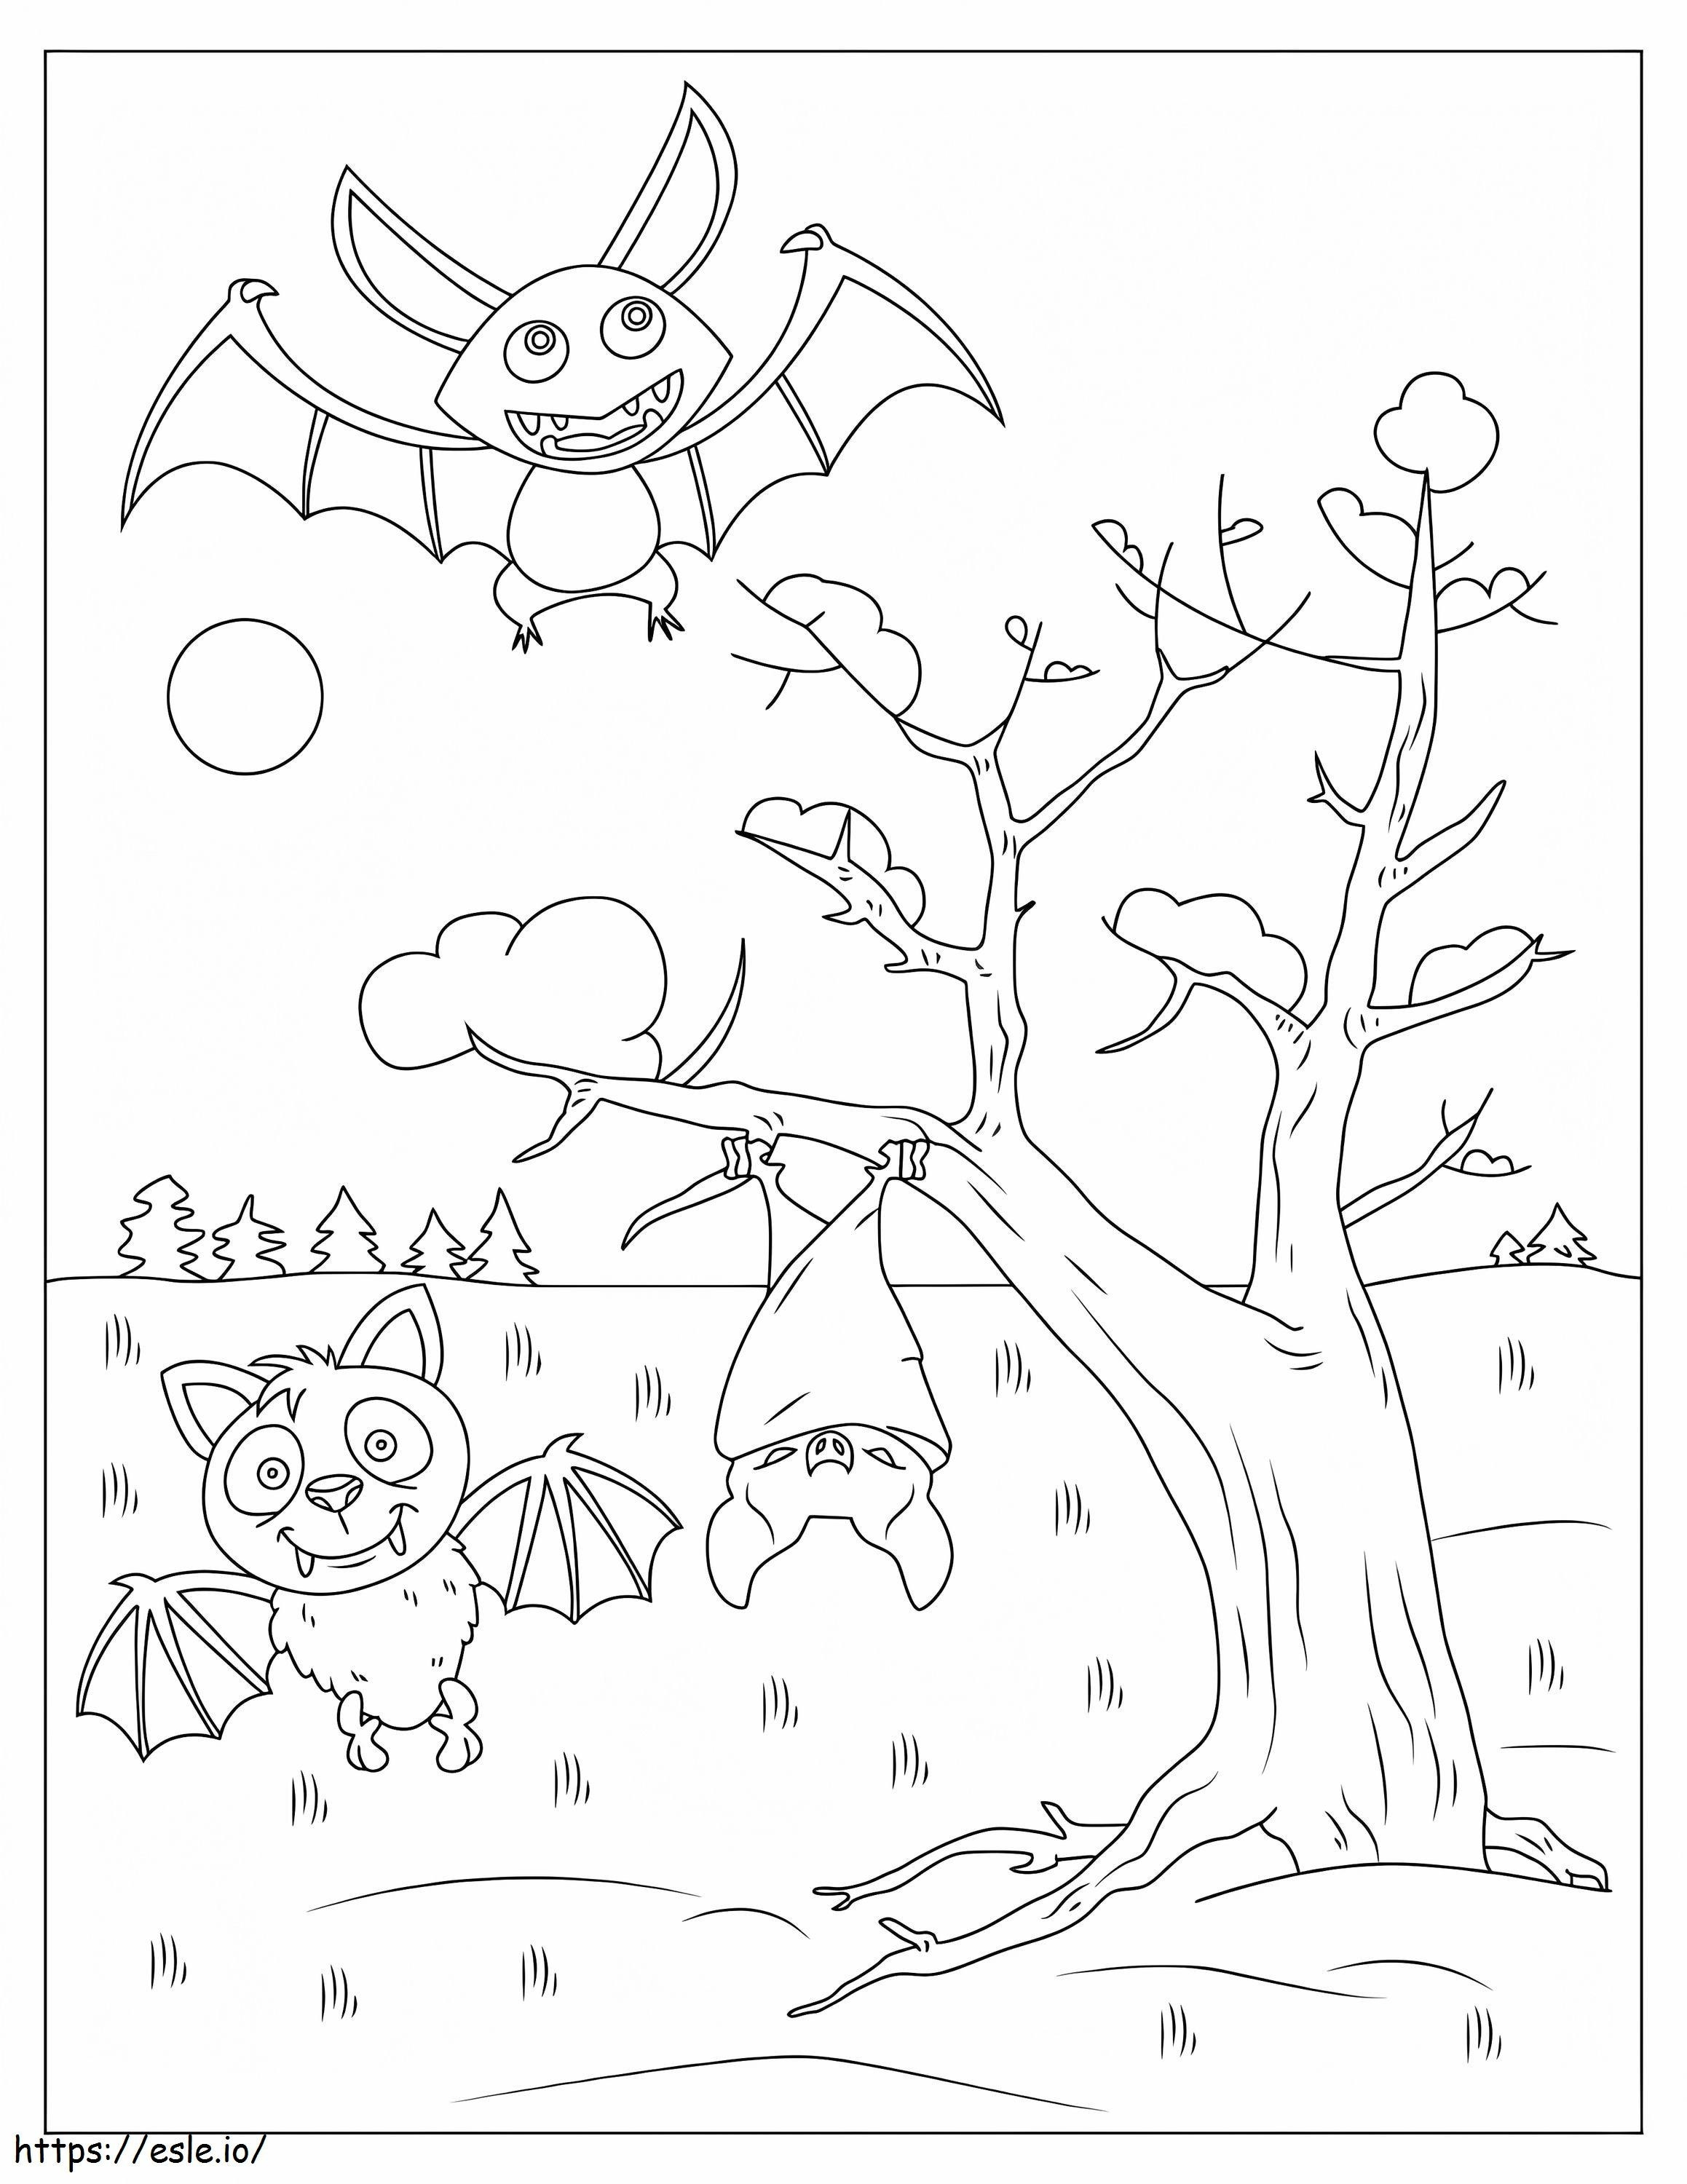 Tre pipistrelli dei cartoni animati da colorare